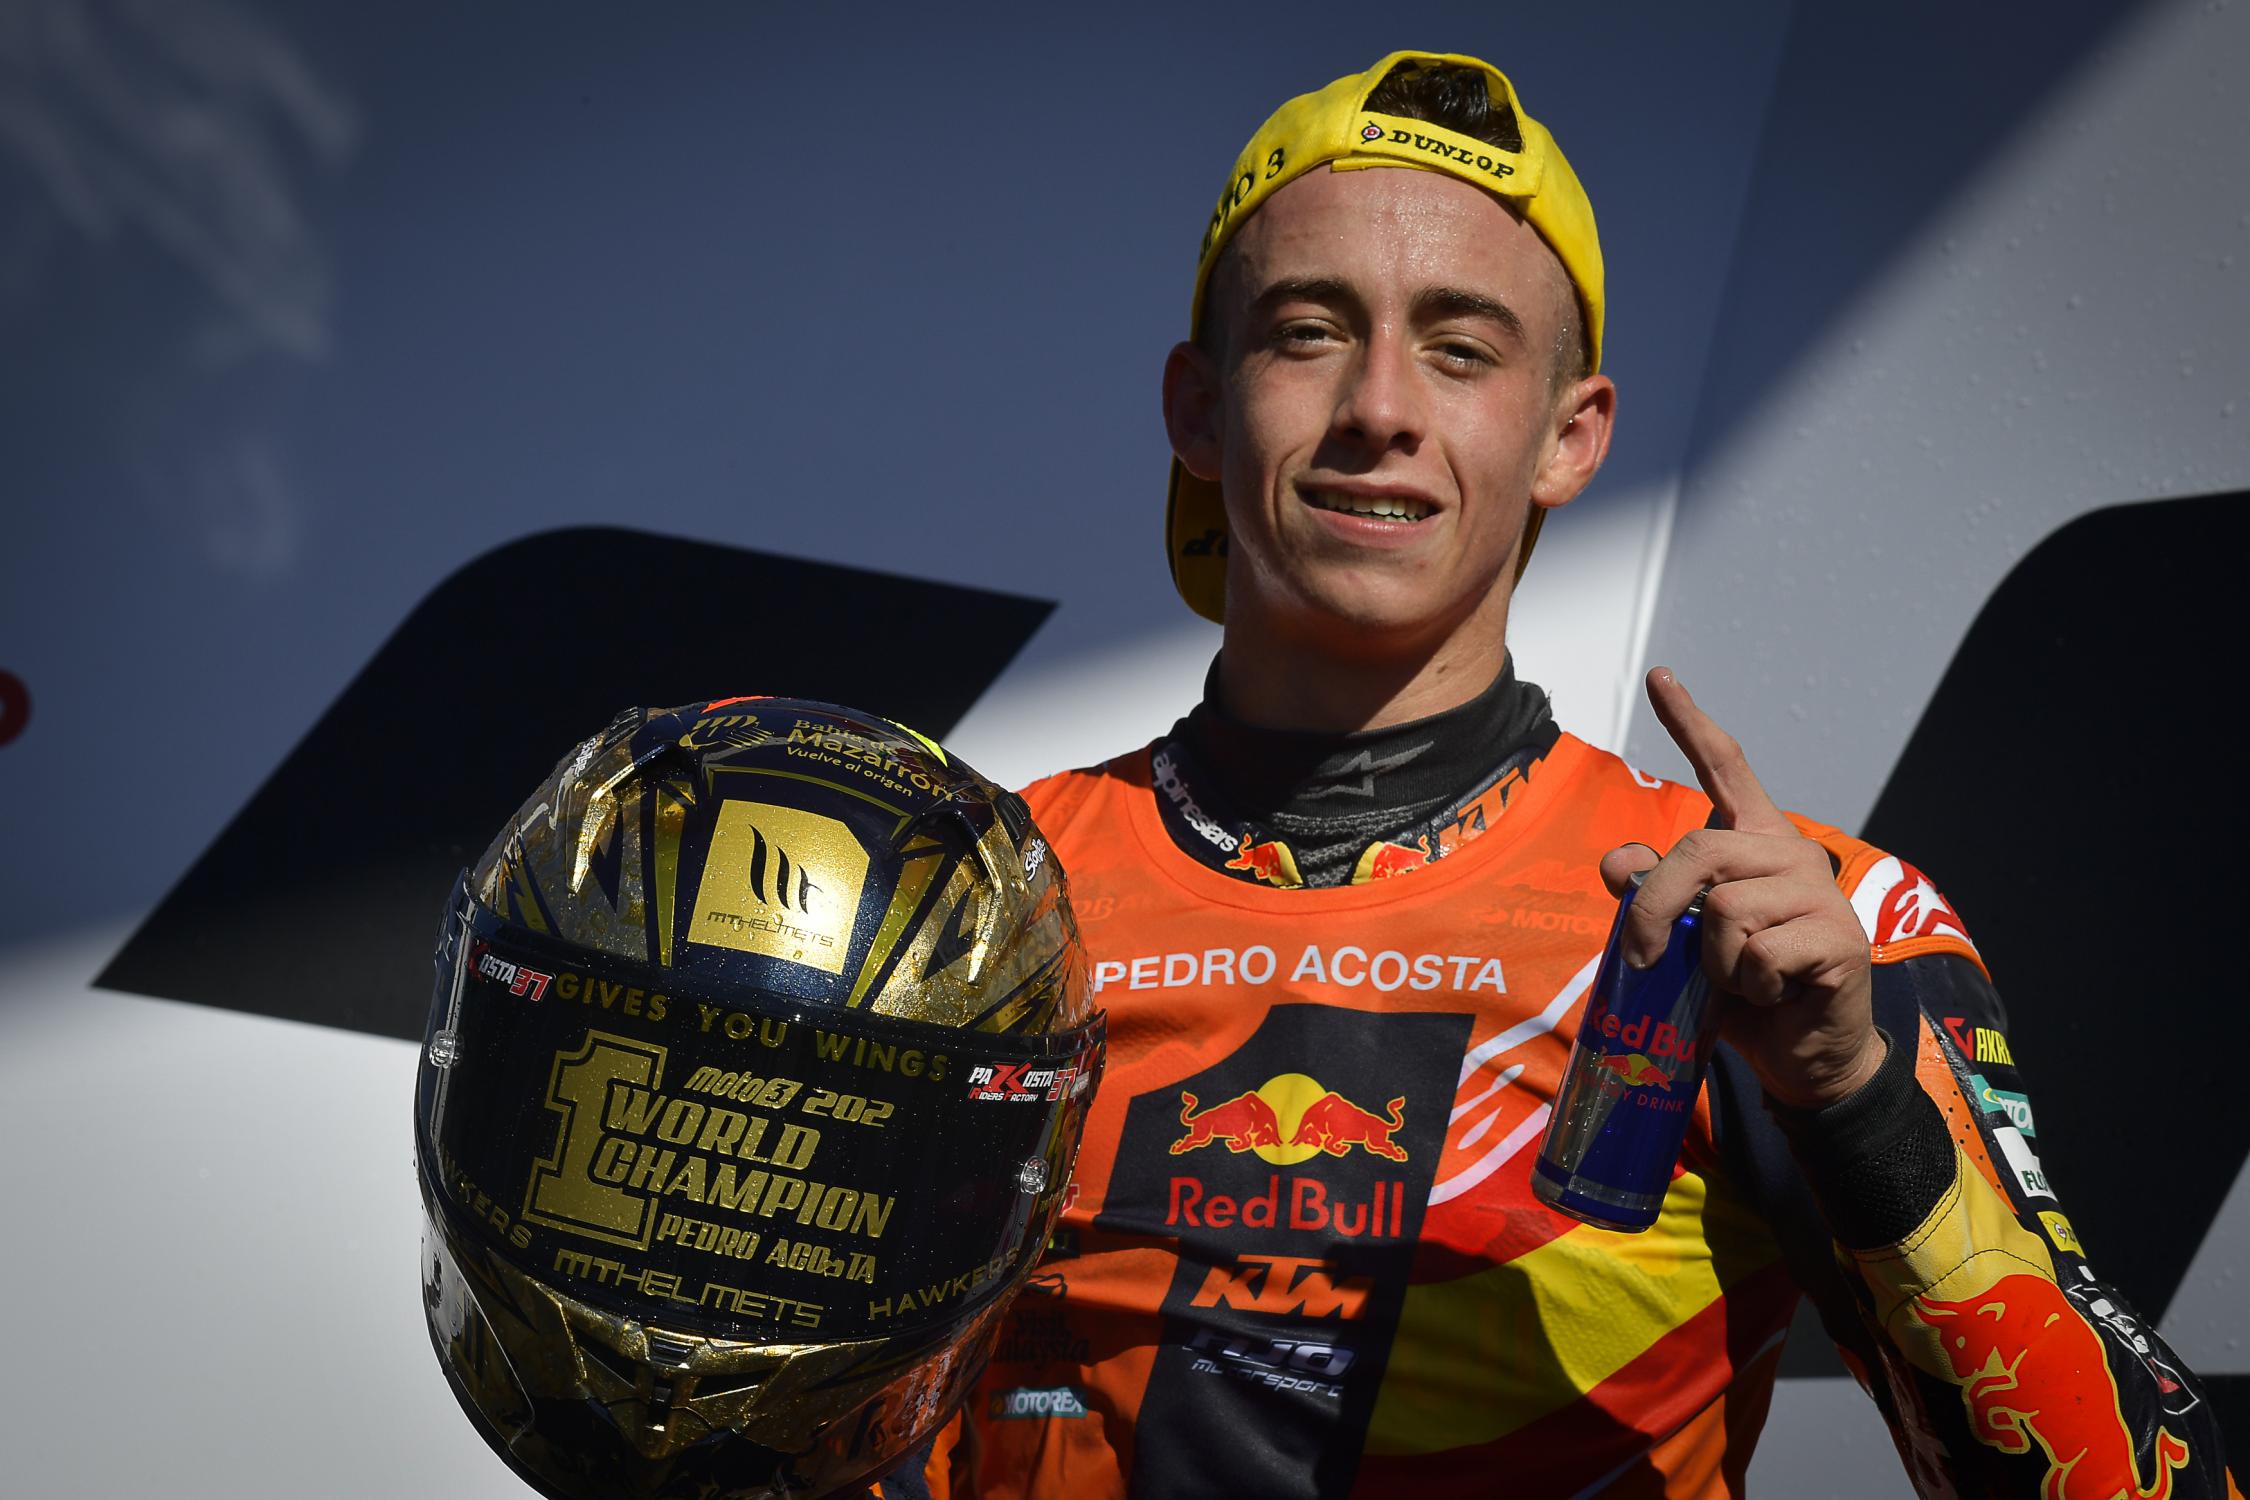 Pedro Acosta jako první nováček v Moto3 získal titul mistra světa